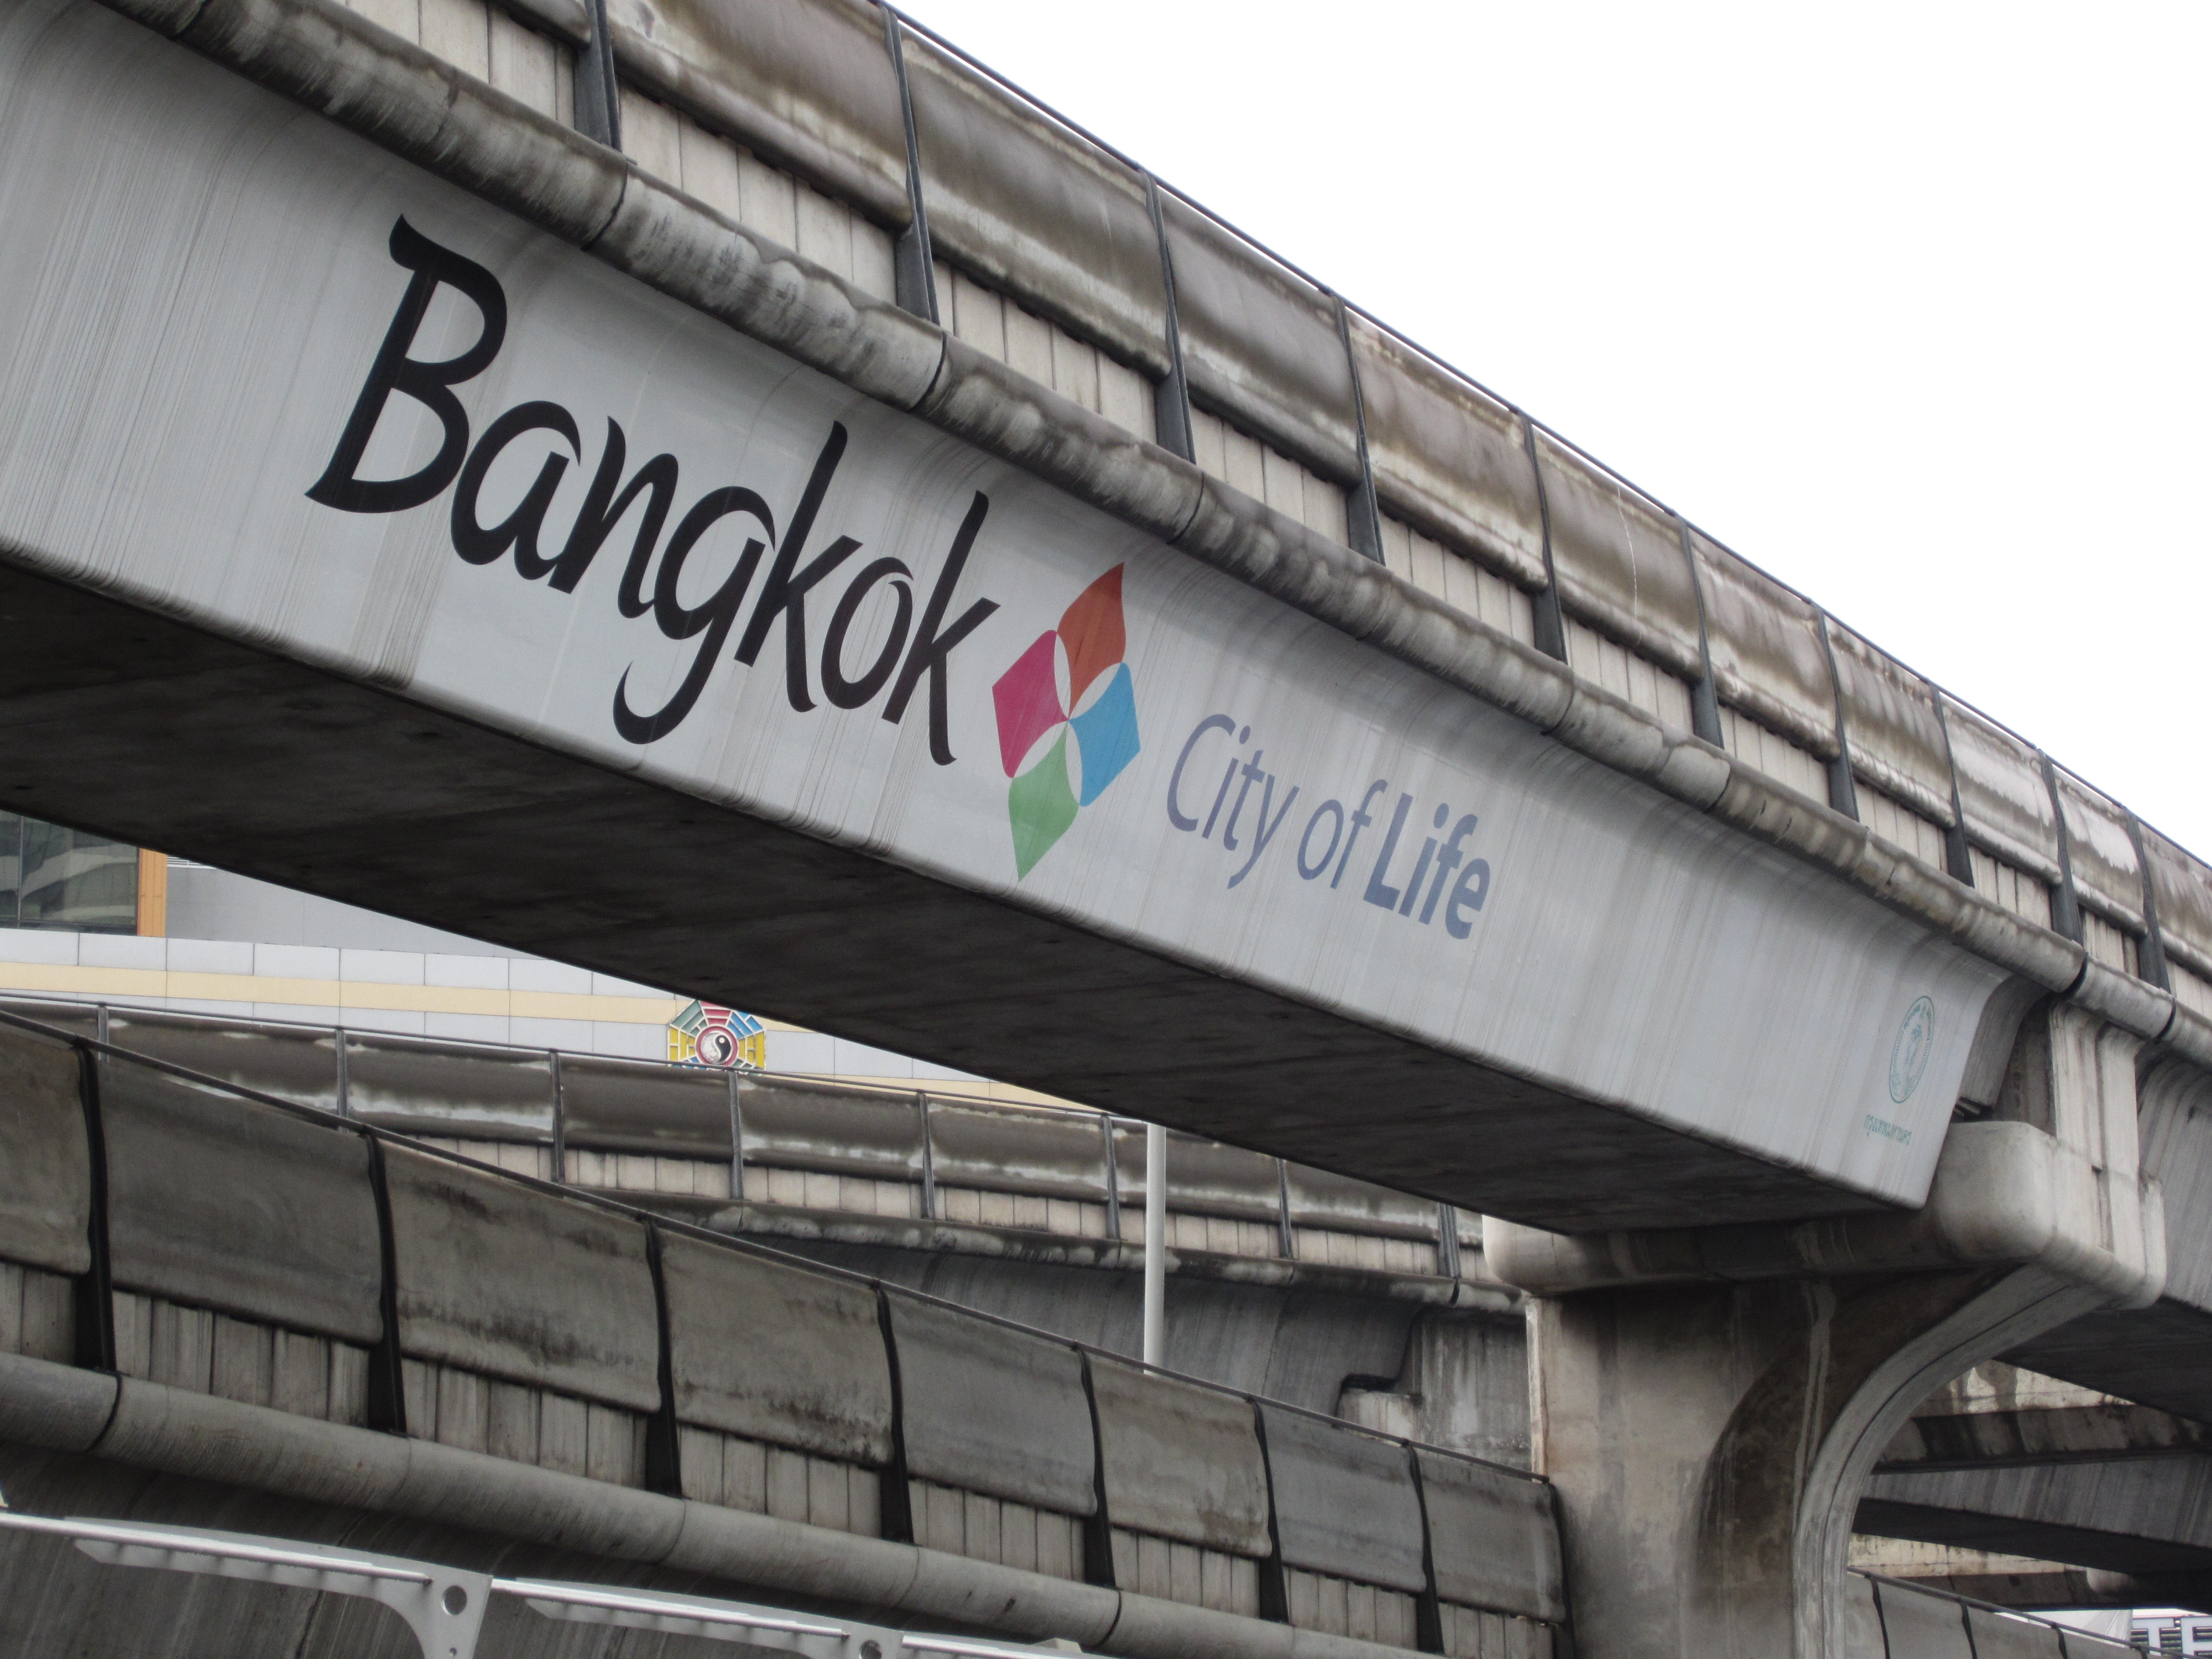 Bangkok City Of Life